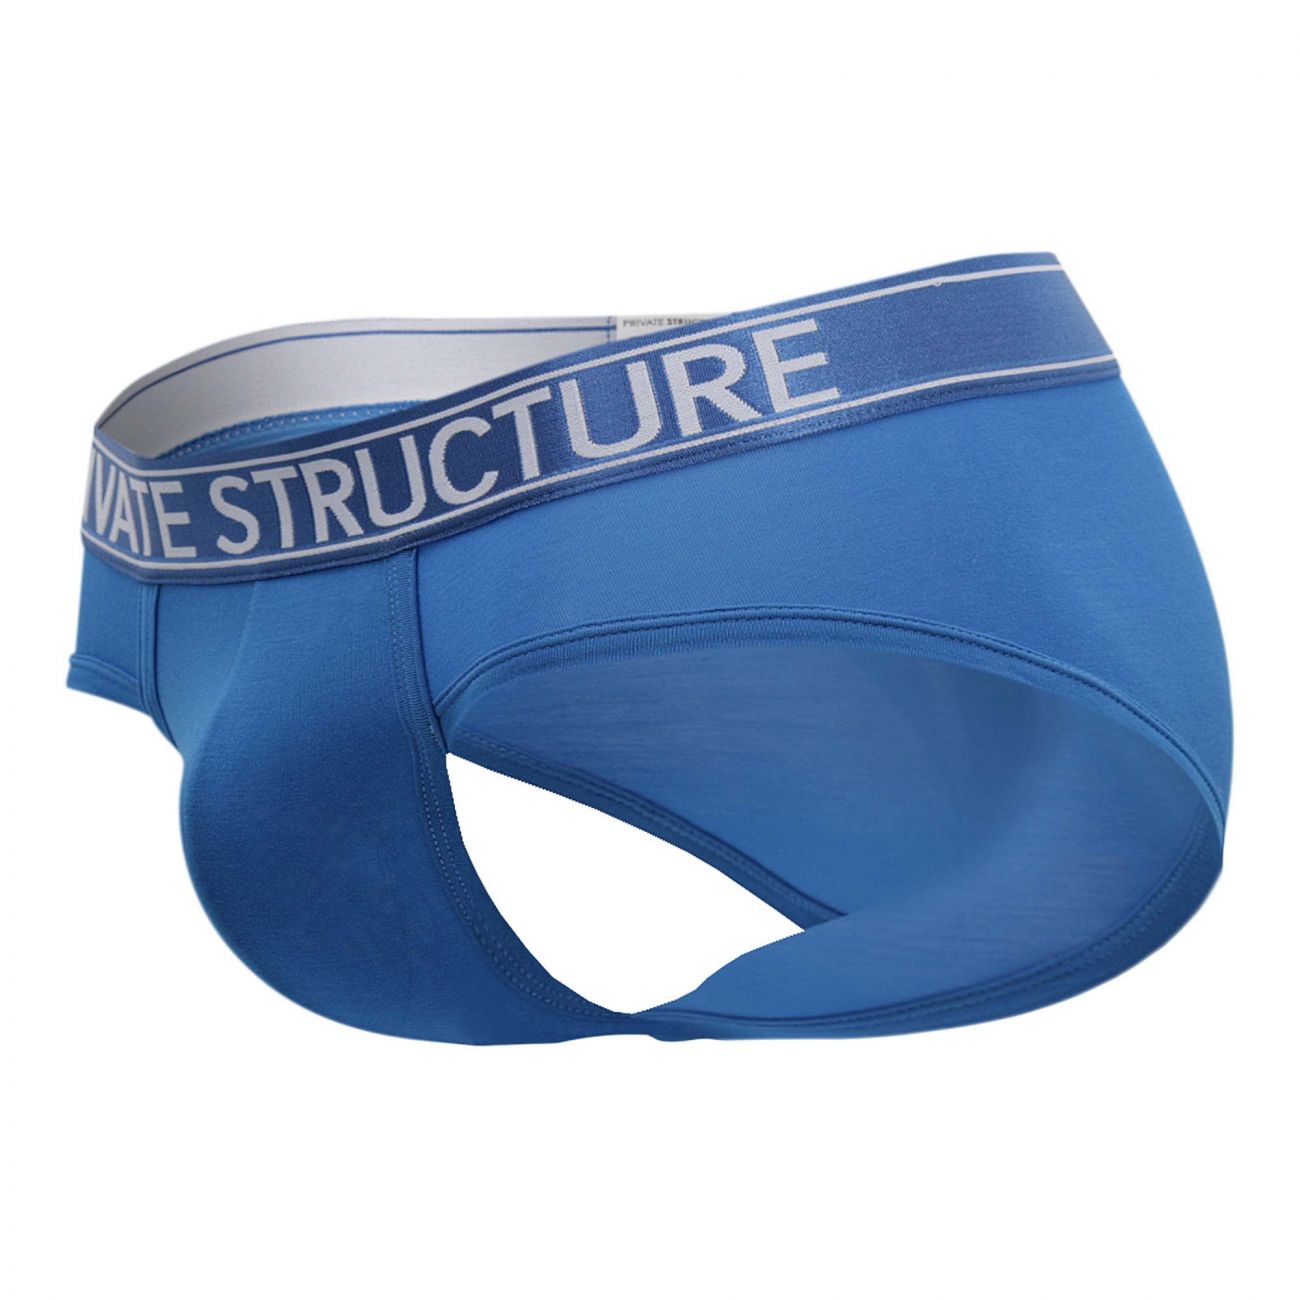 Mens Underwear: Private-Structure PBUZ3748 Platinum Bamboo Contour ...